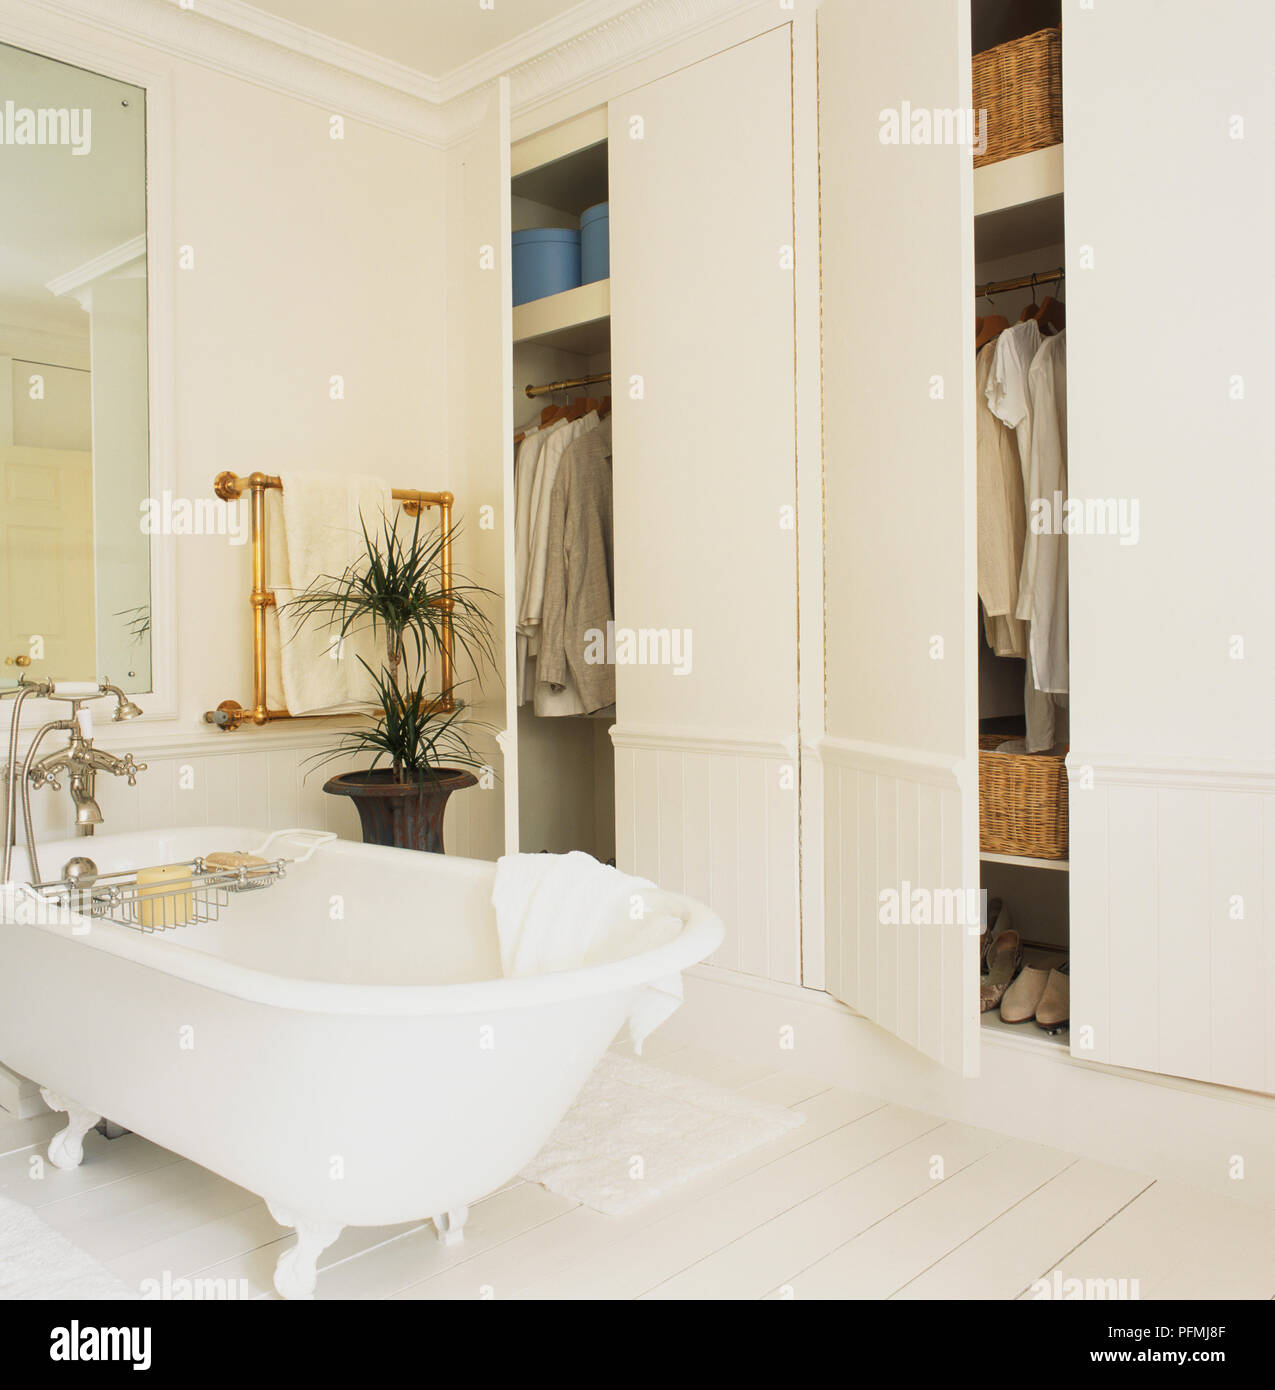 Baño independiente junto a armarios empotrados Fotografía de stock - Alamy